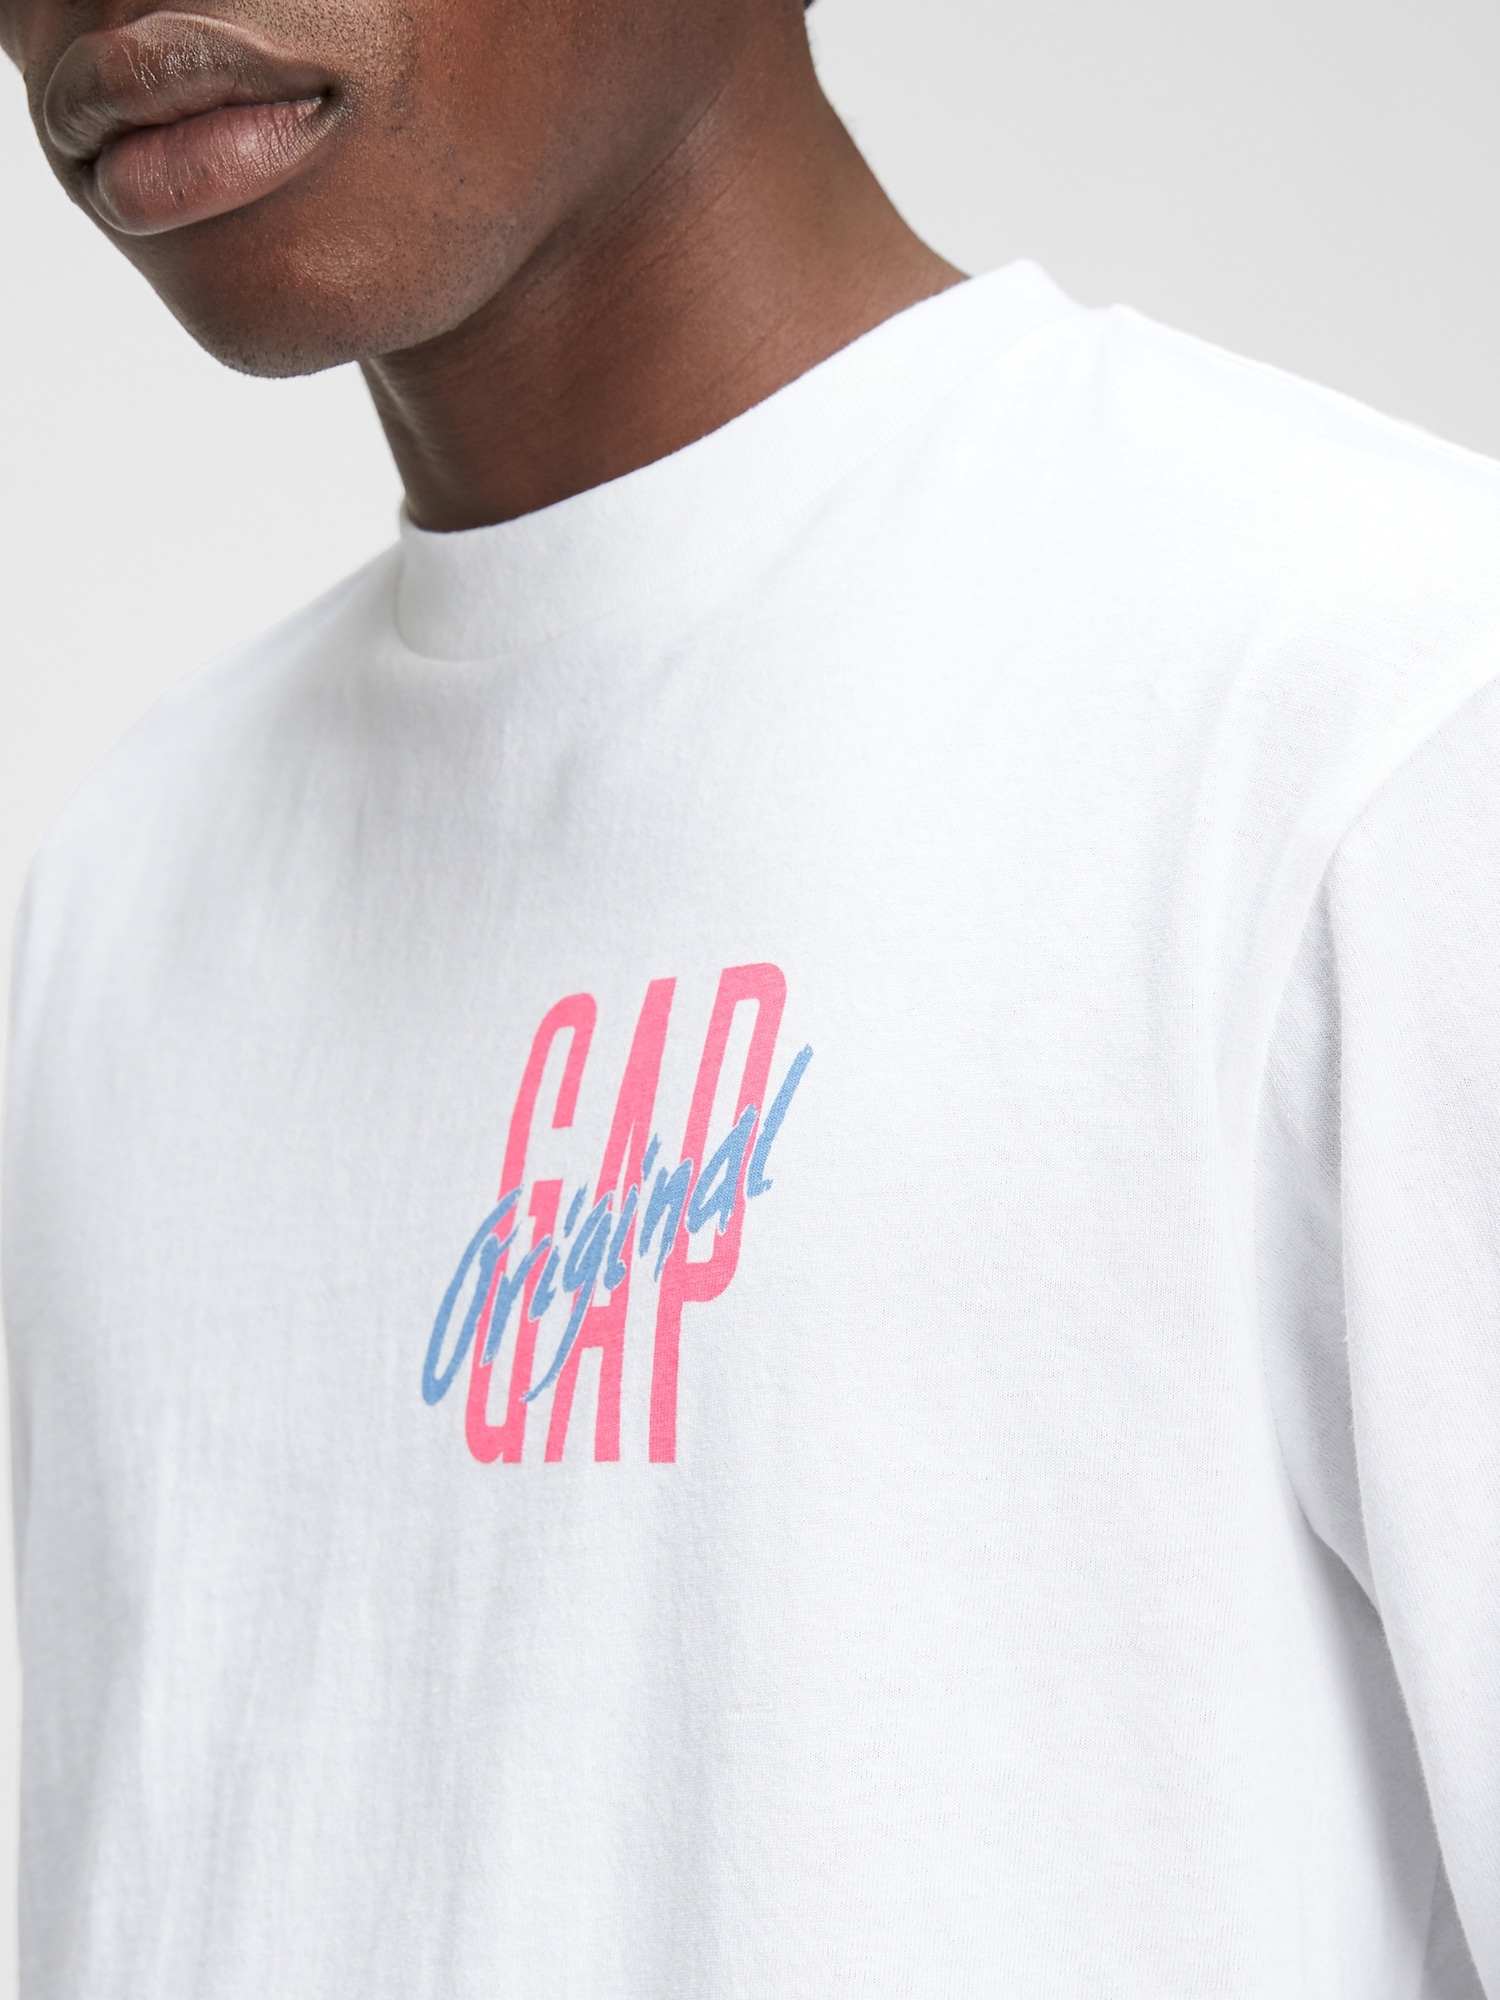 Gap Logo Uzun Kollu T-Shirt. 3